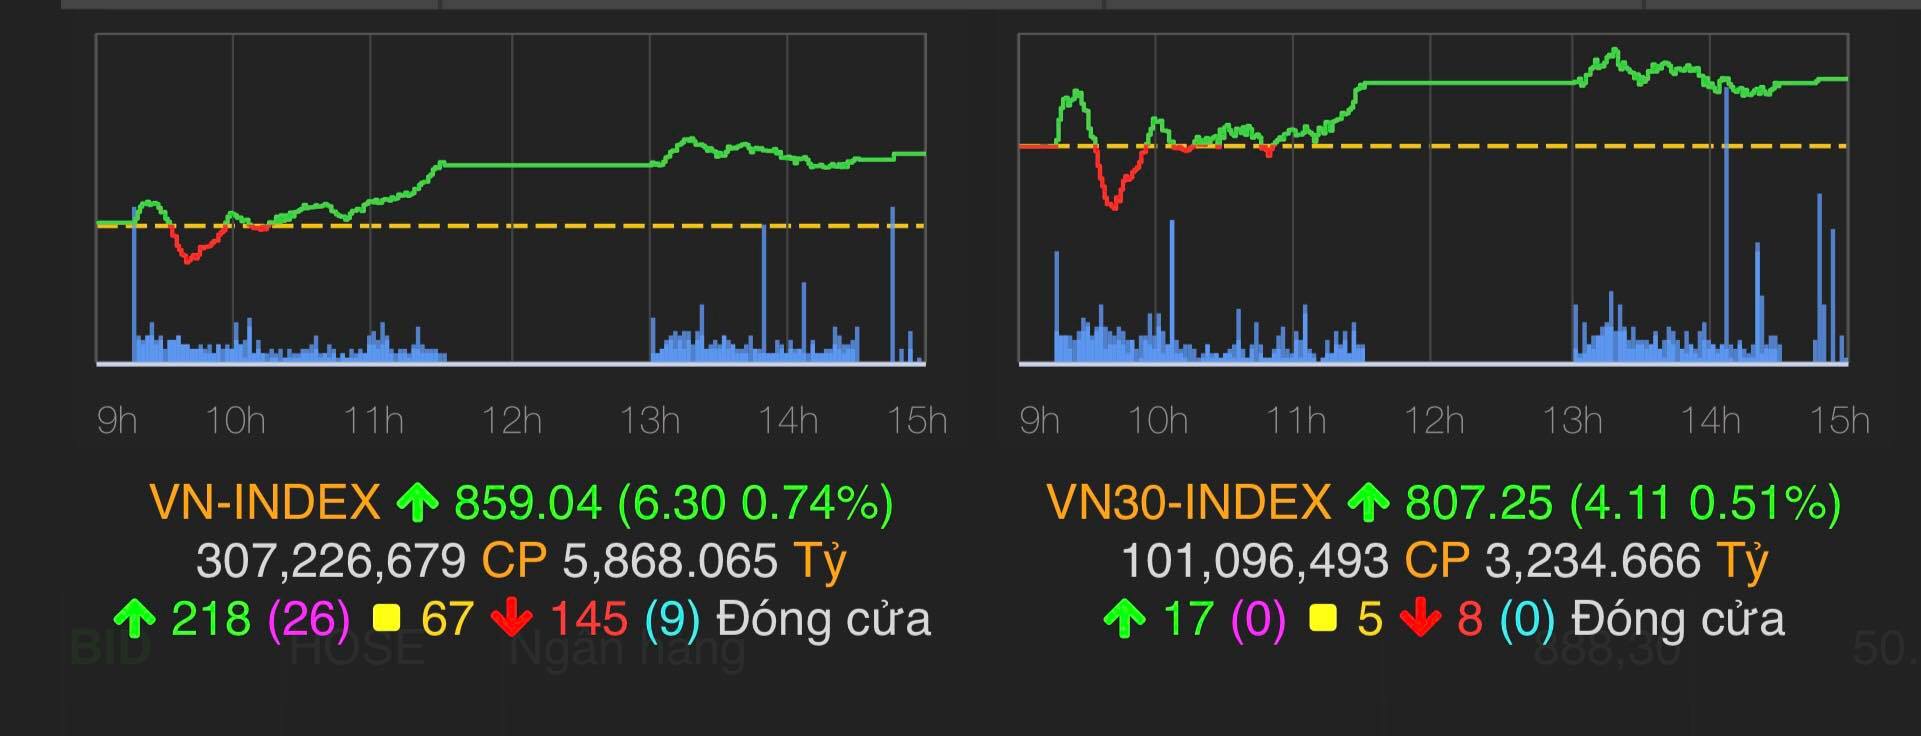 VN-Index tăng 6,3 điểm (0,74%) lên 859,04 điểm.